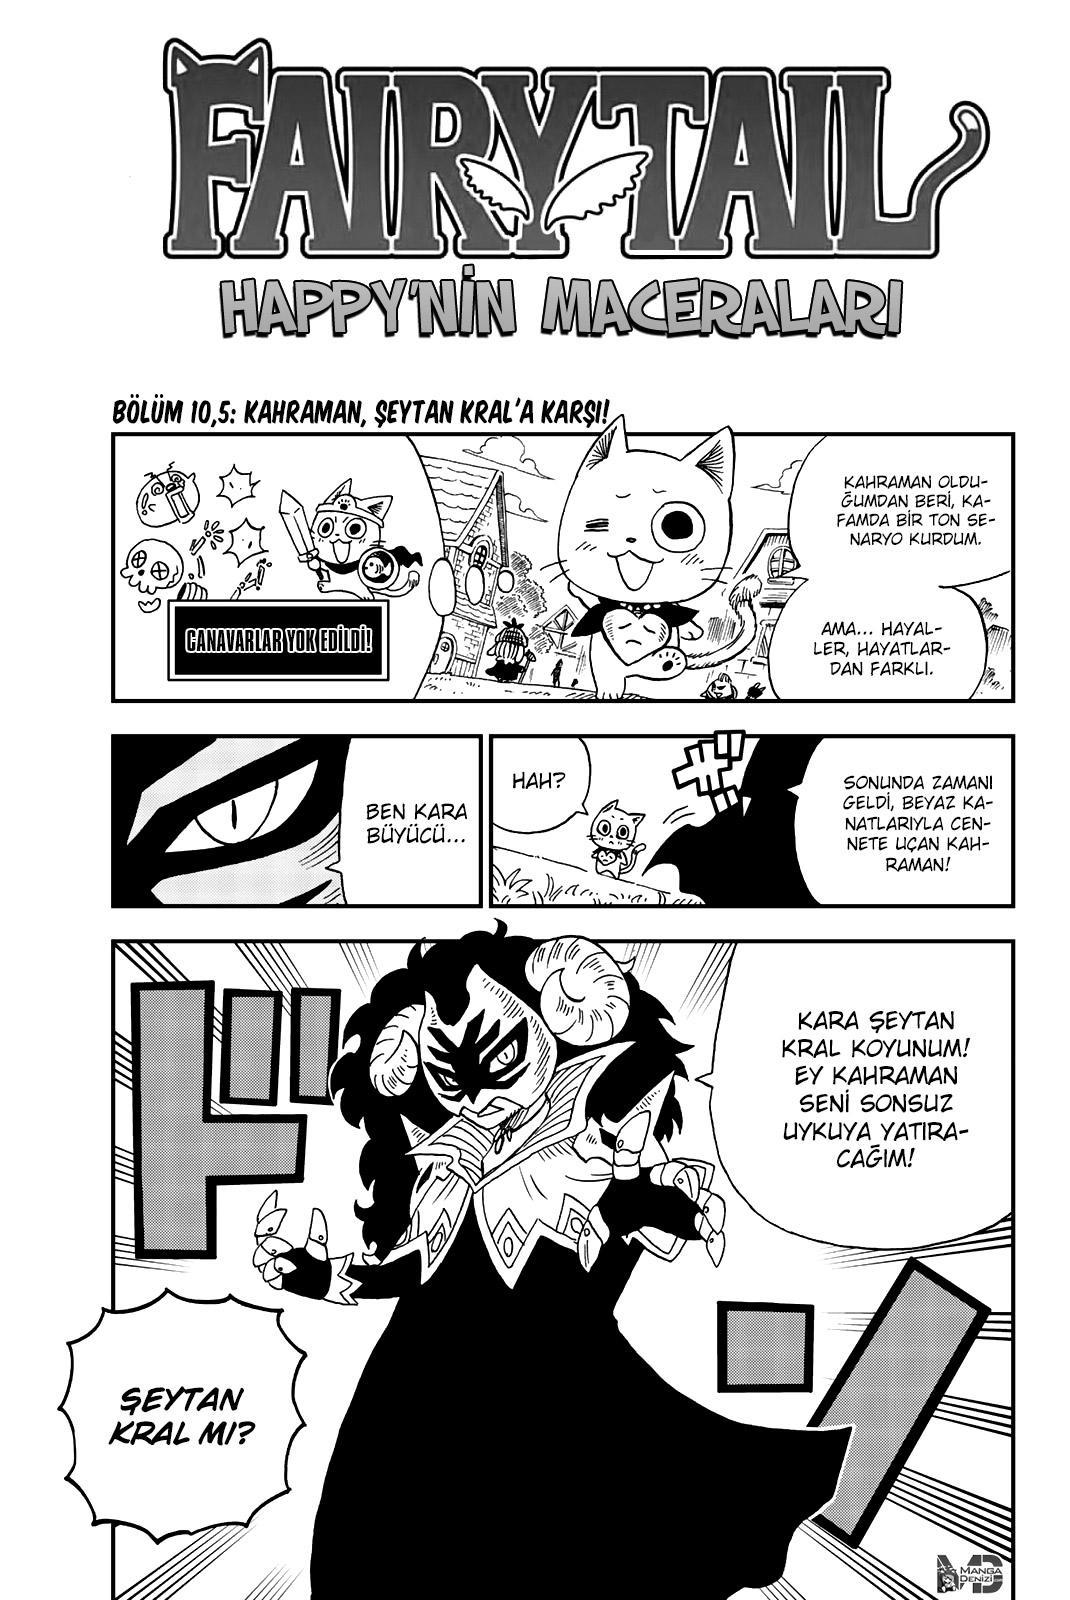 Fairy Tail: Happy's Great Adventure mangasının 10.5 bölümünün 2. sayfasını okuyorsunuz.